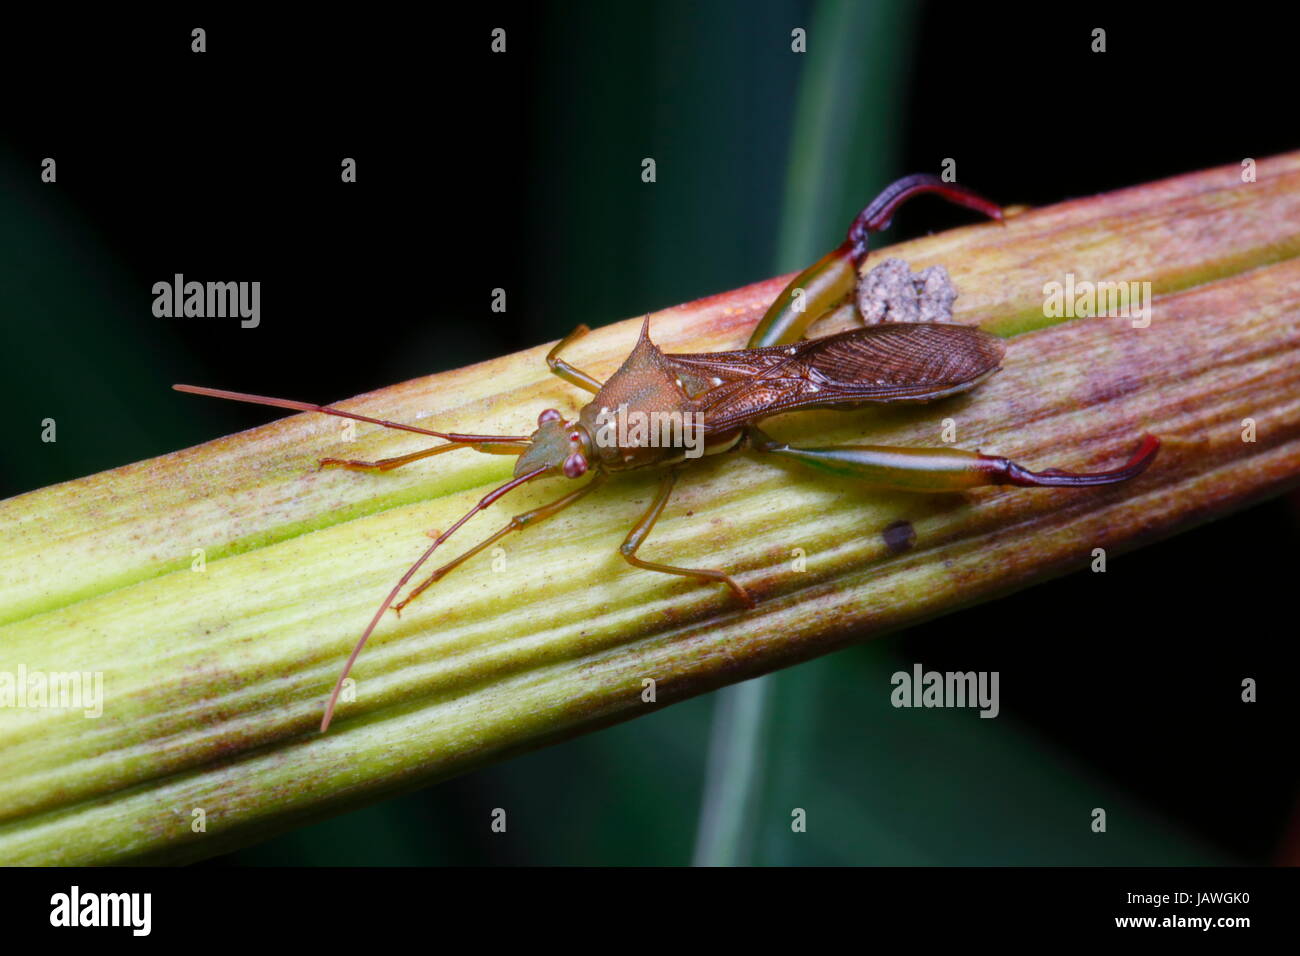 Un arc-legged bug, Hyalymenus longispinus, rampant sur une tige de la plante. Banque D'Images